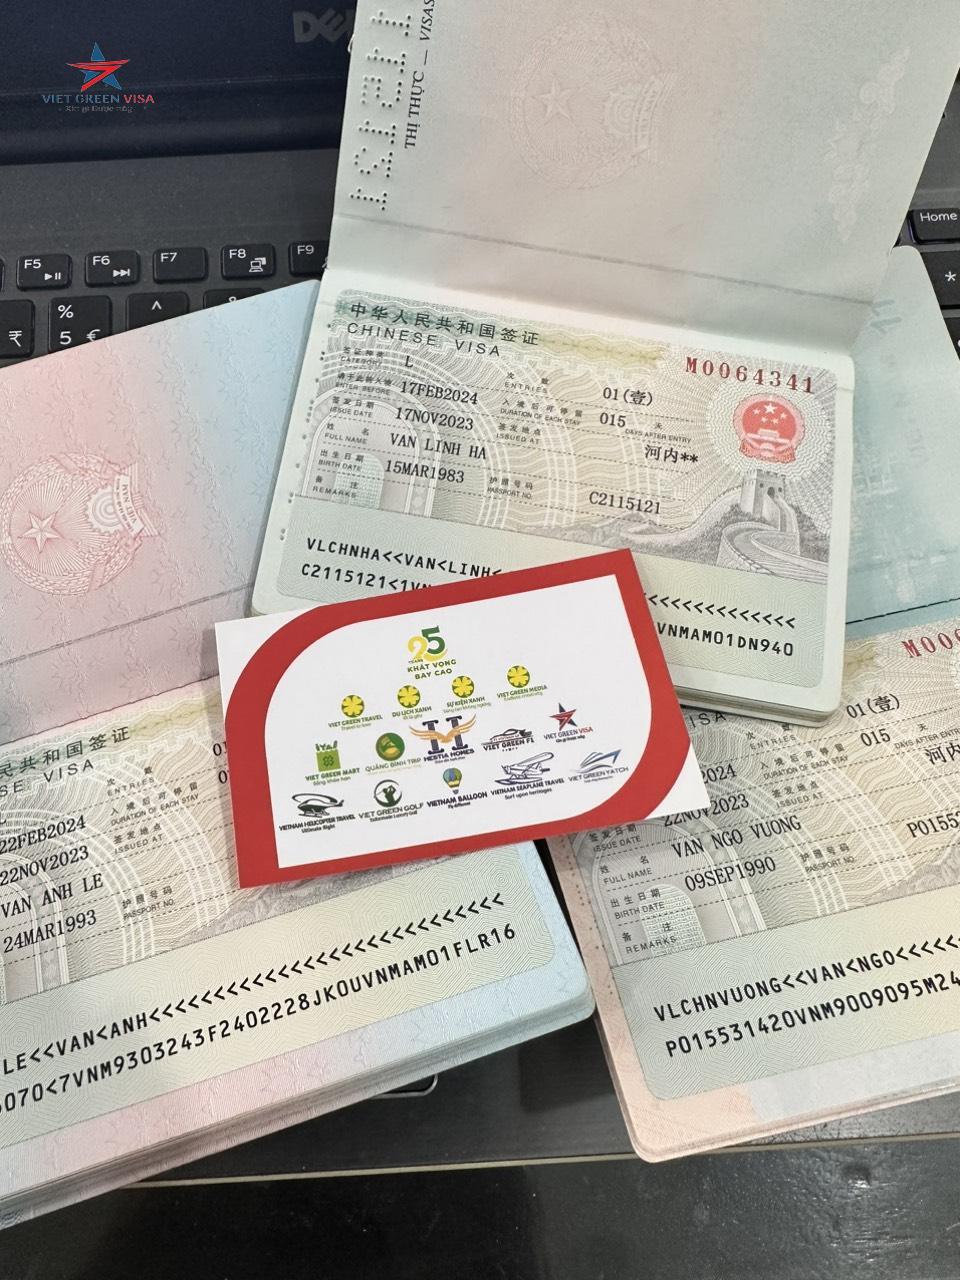 Dịch vụ xin visa Trung Quốc tại Long An chuyên nghiệp